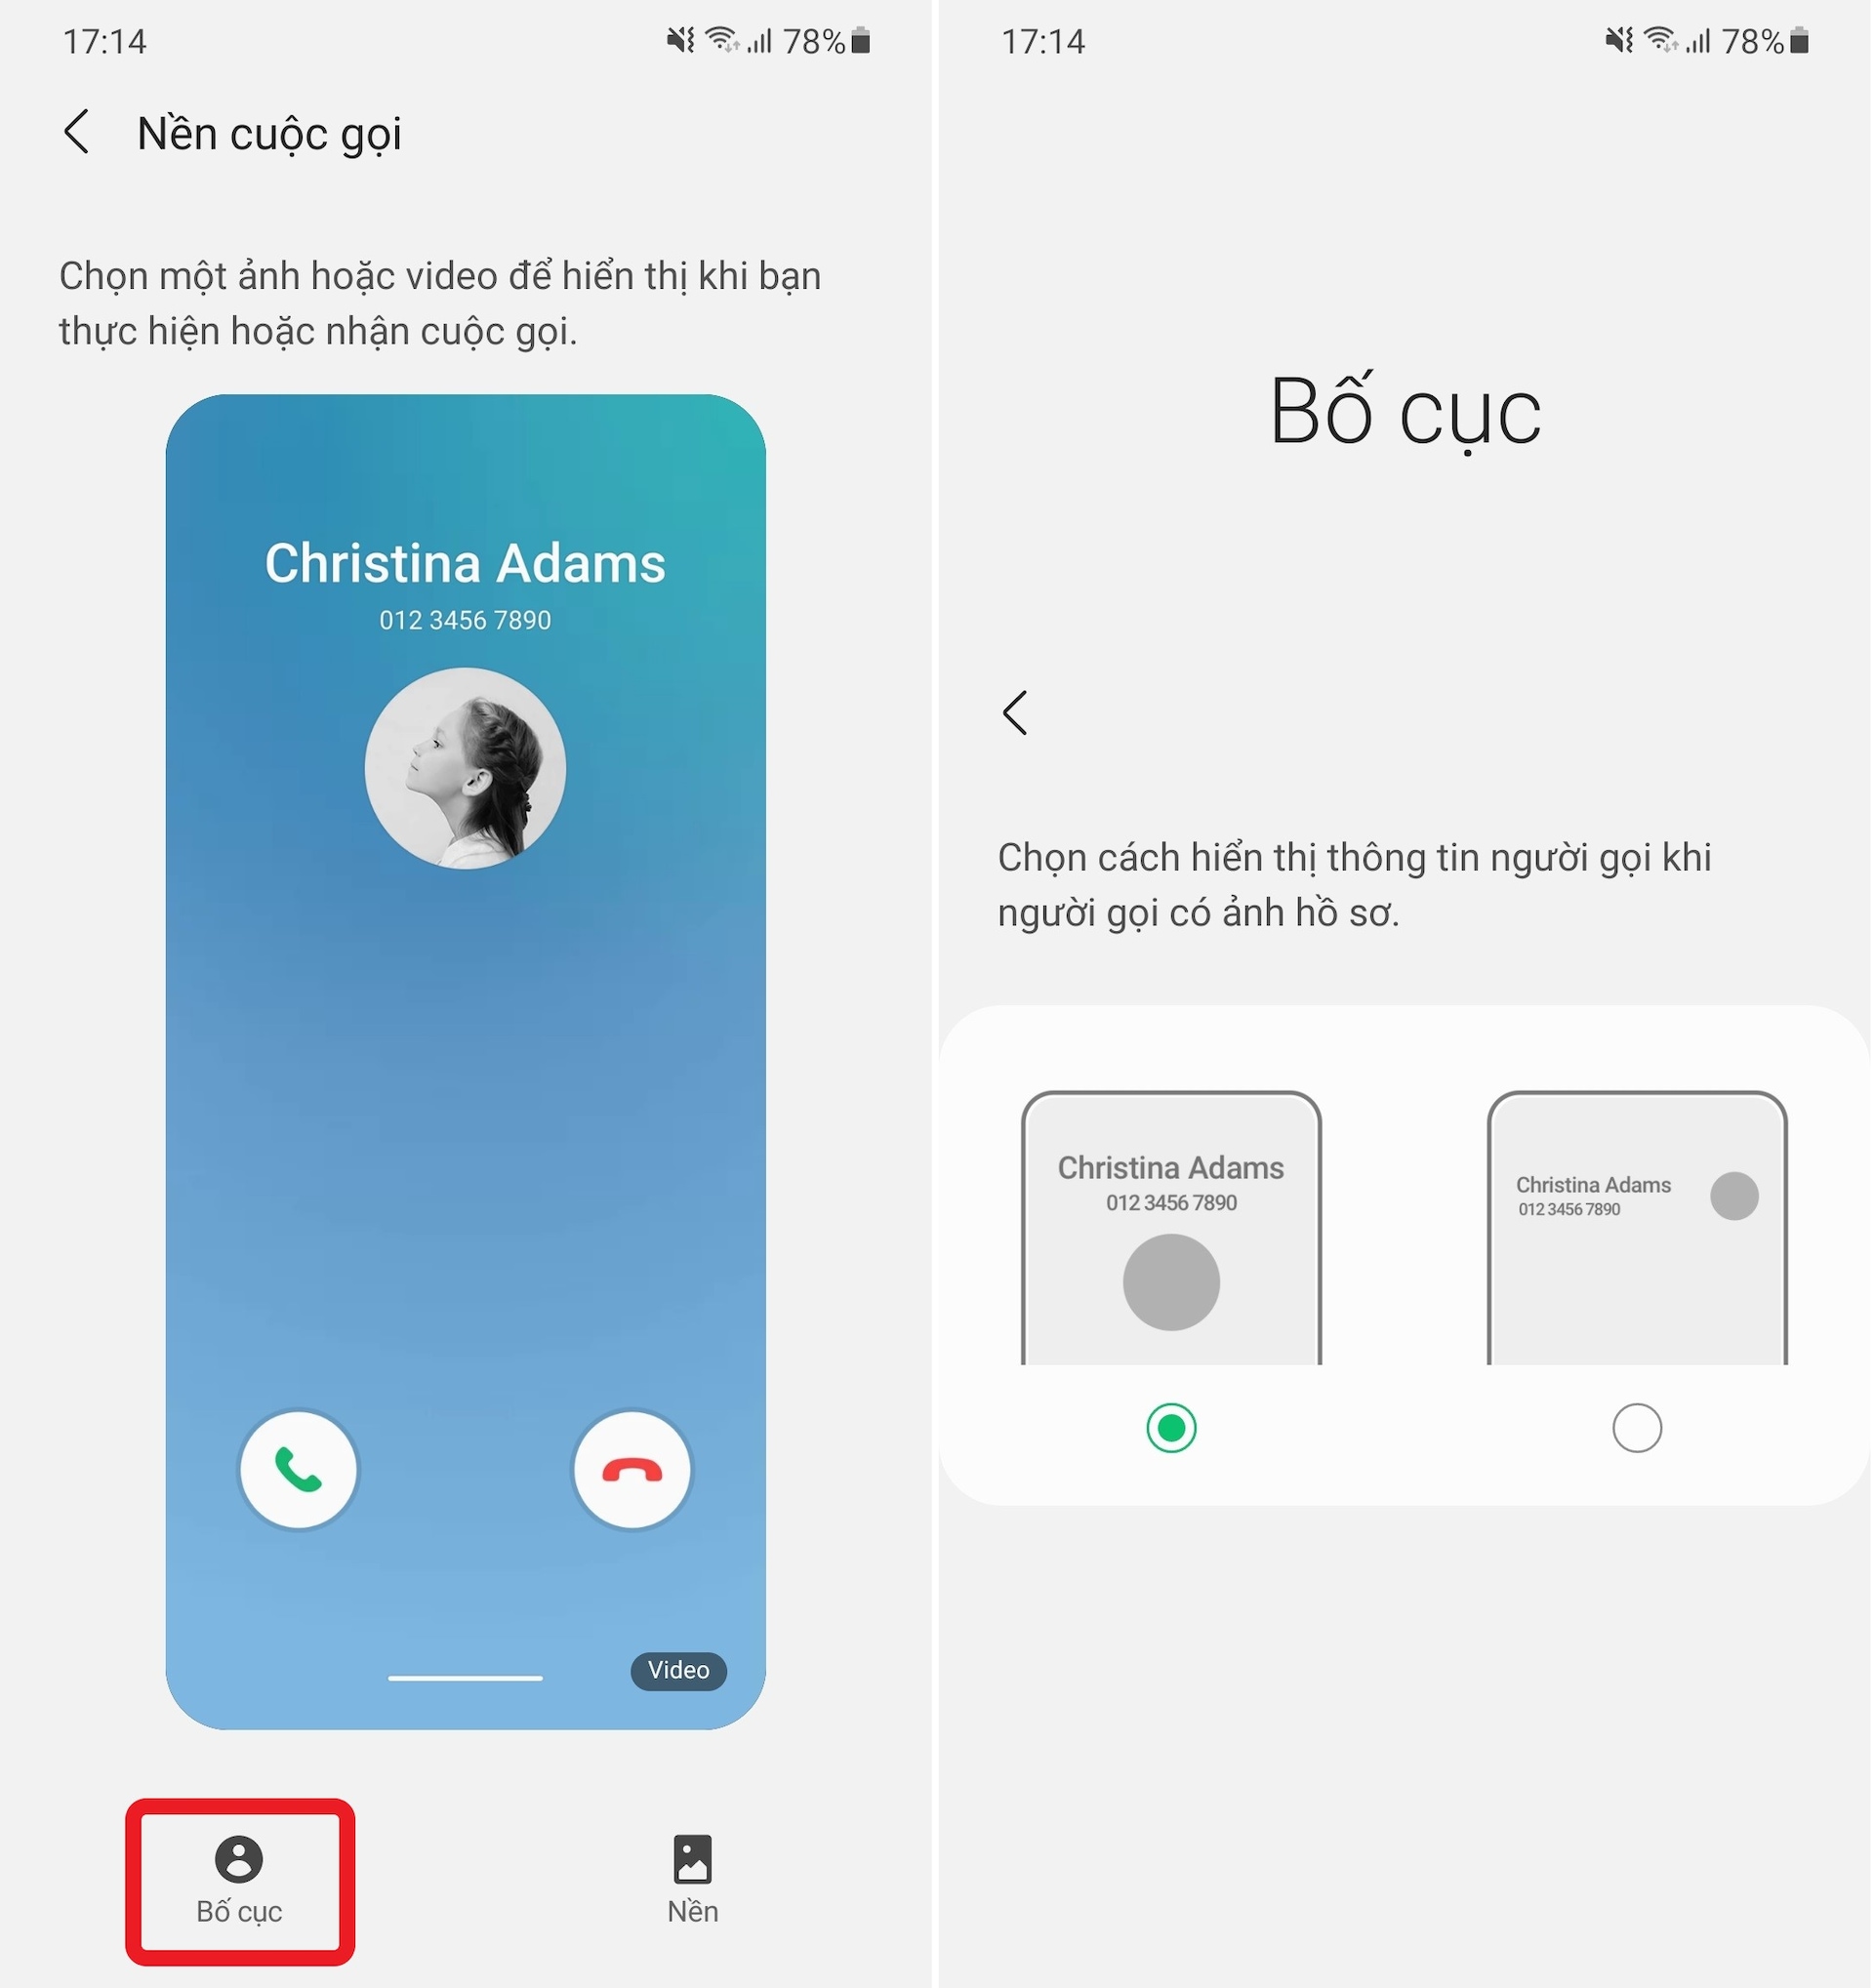 Android 11 mang đến giao diện cuộc gọi đẹp mắt và tiện ích hơn bao giờ hết. Bạn có thể kiểm soát cài đặt âm thanh, chế độ loa ngoài, tắt dịch vụ hỗ trợ và tính năng khác ngay từ trang cuộc gọi. Hãy xem hình ảnh liên quan để khám phá thêm những tính năng độc đáo của Android